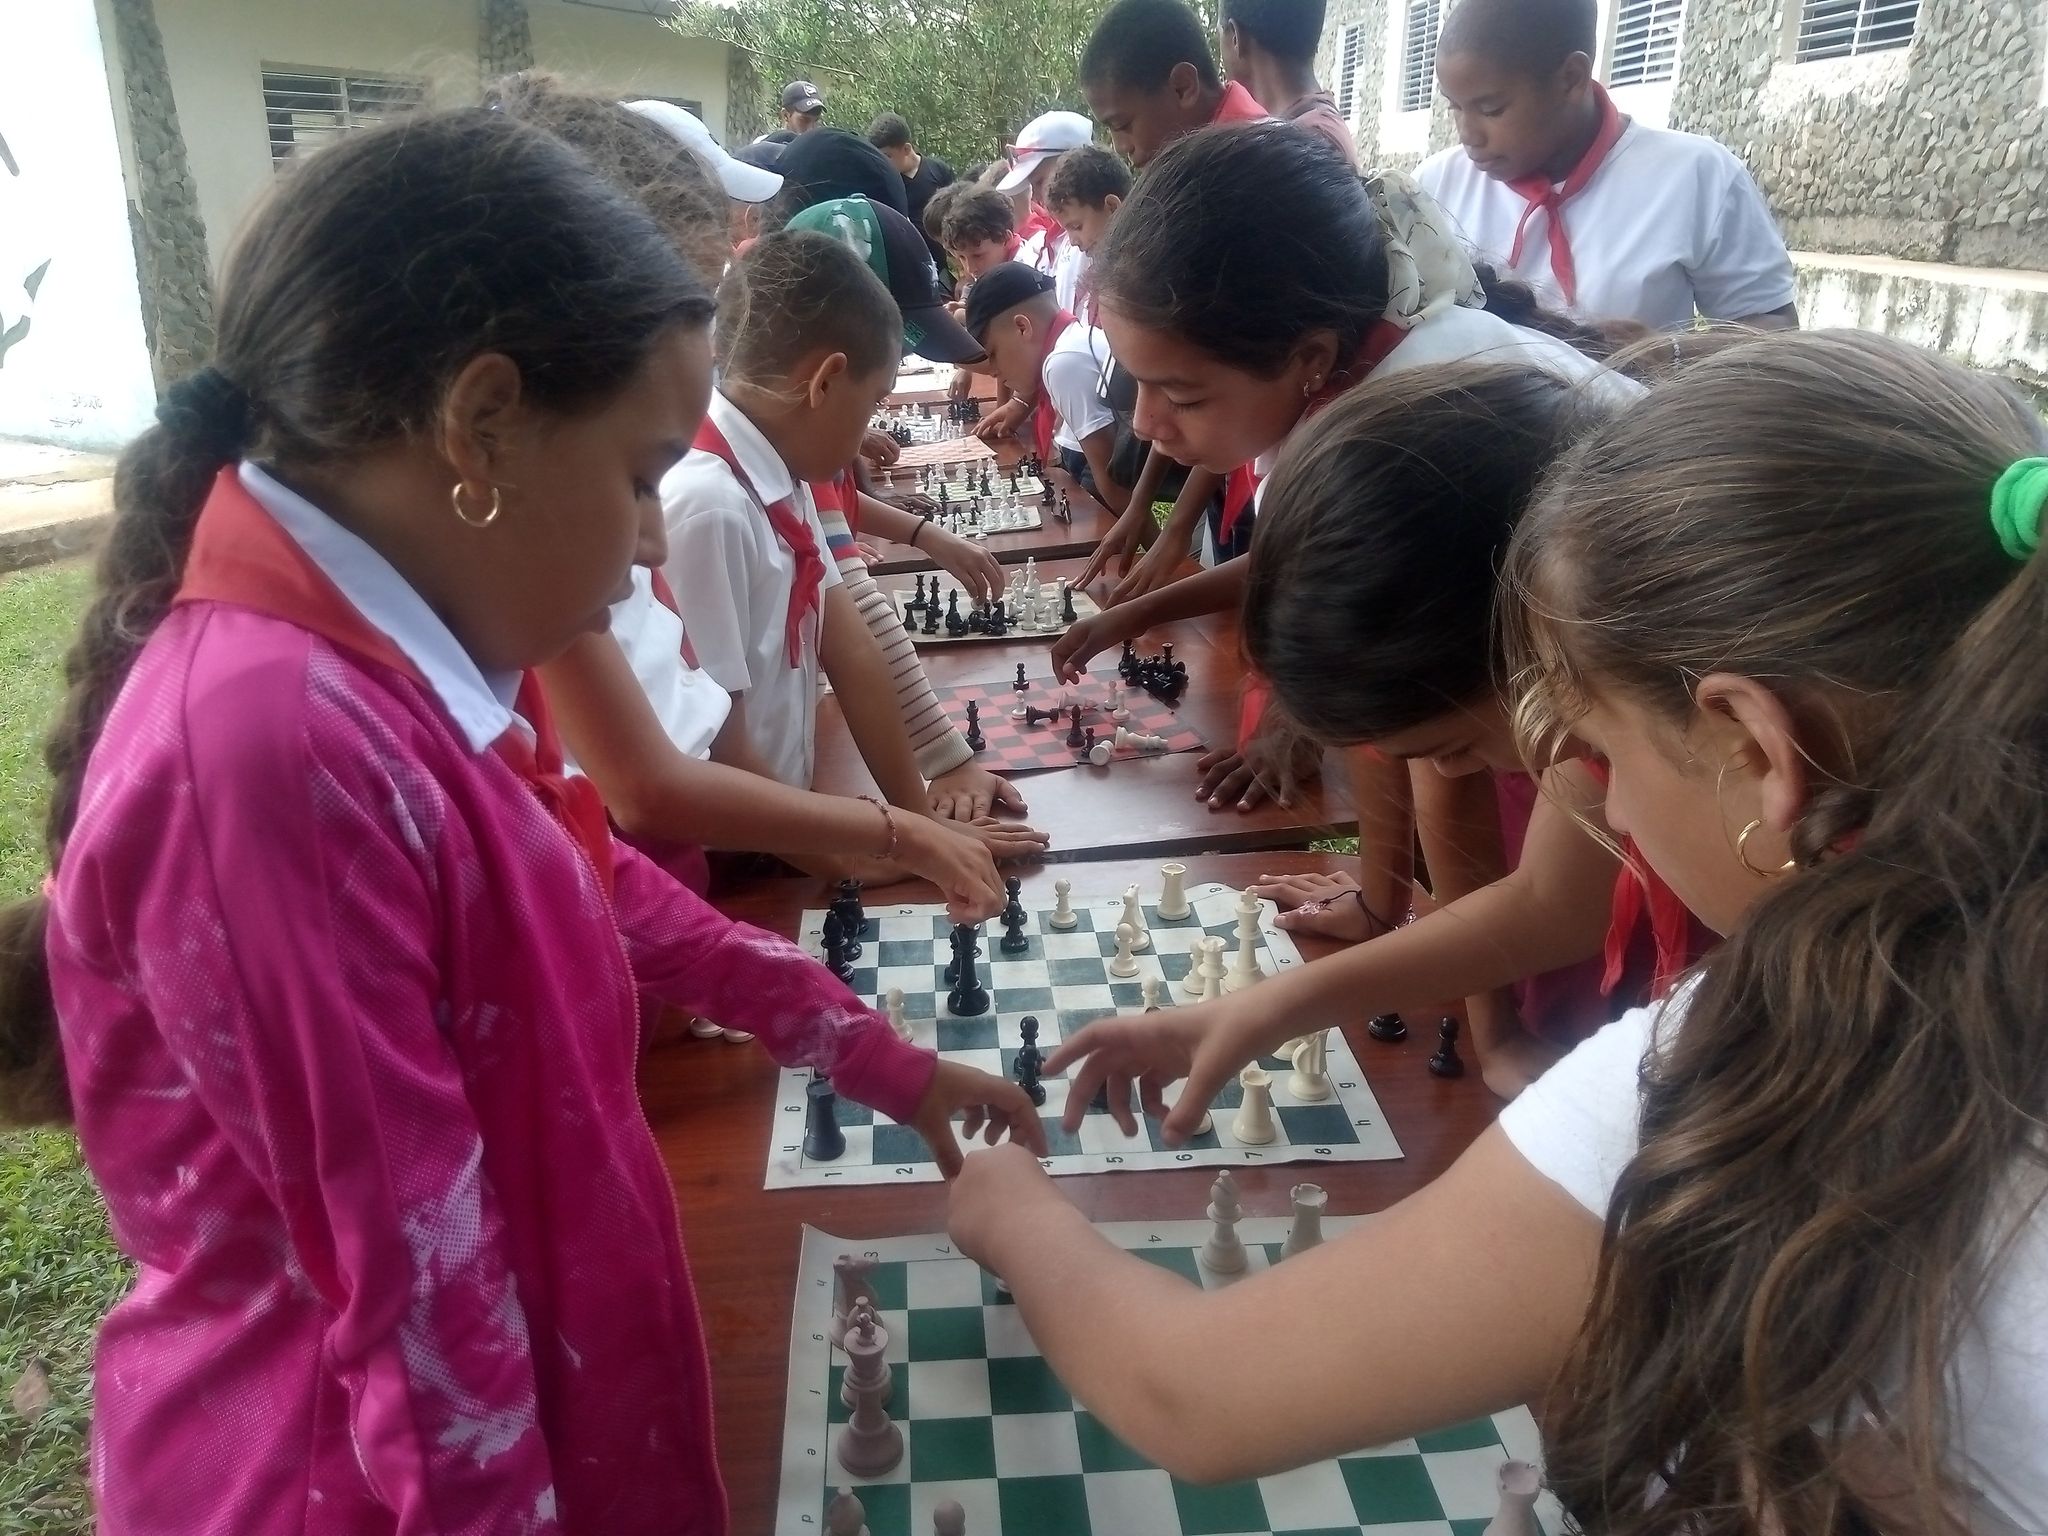 Con frecuencia, en el Plan Turquino acontecen simultáneas de ajedrez y los niños lo agradecen. (Foto de la autora)